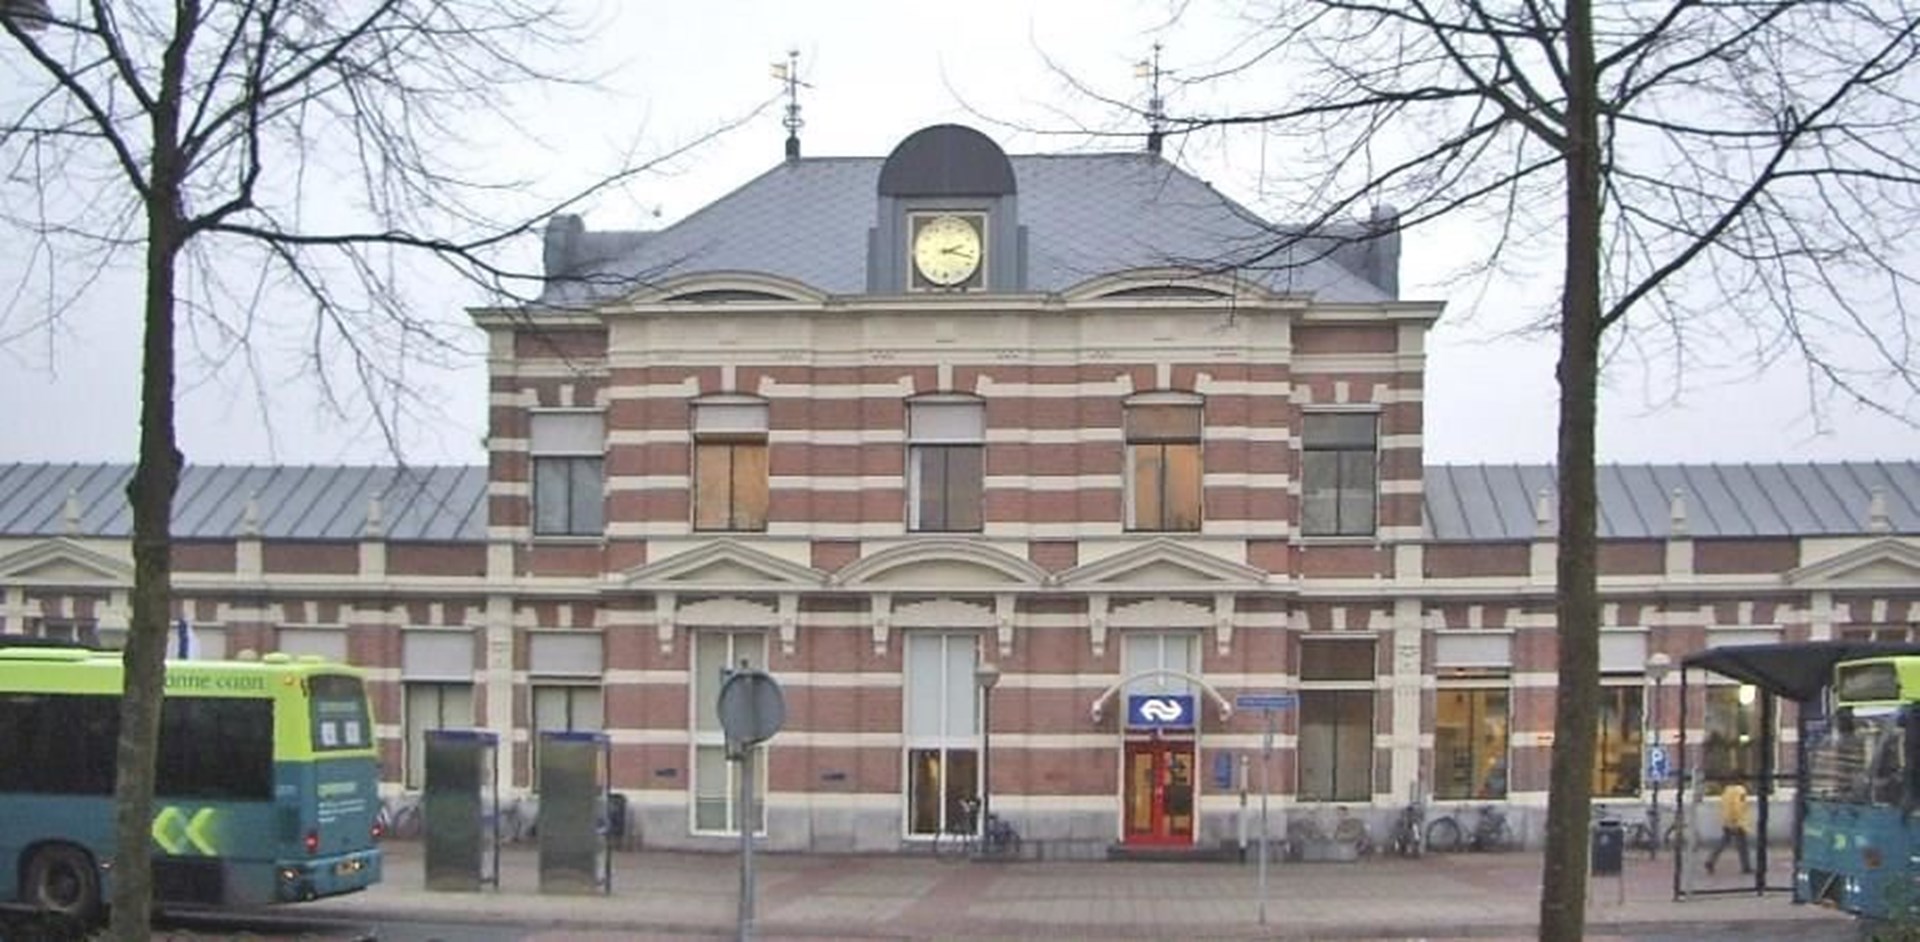 Station Hoorn banner